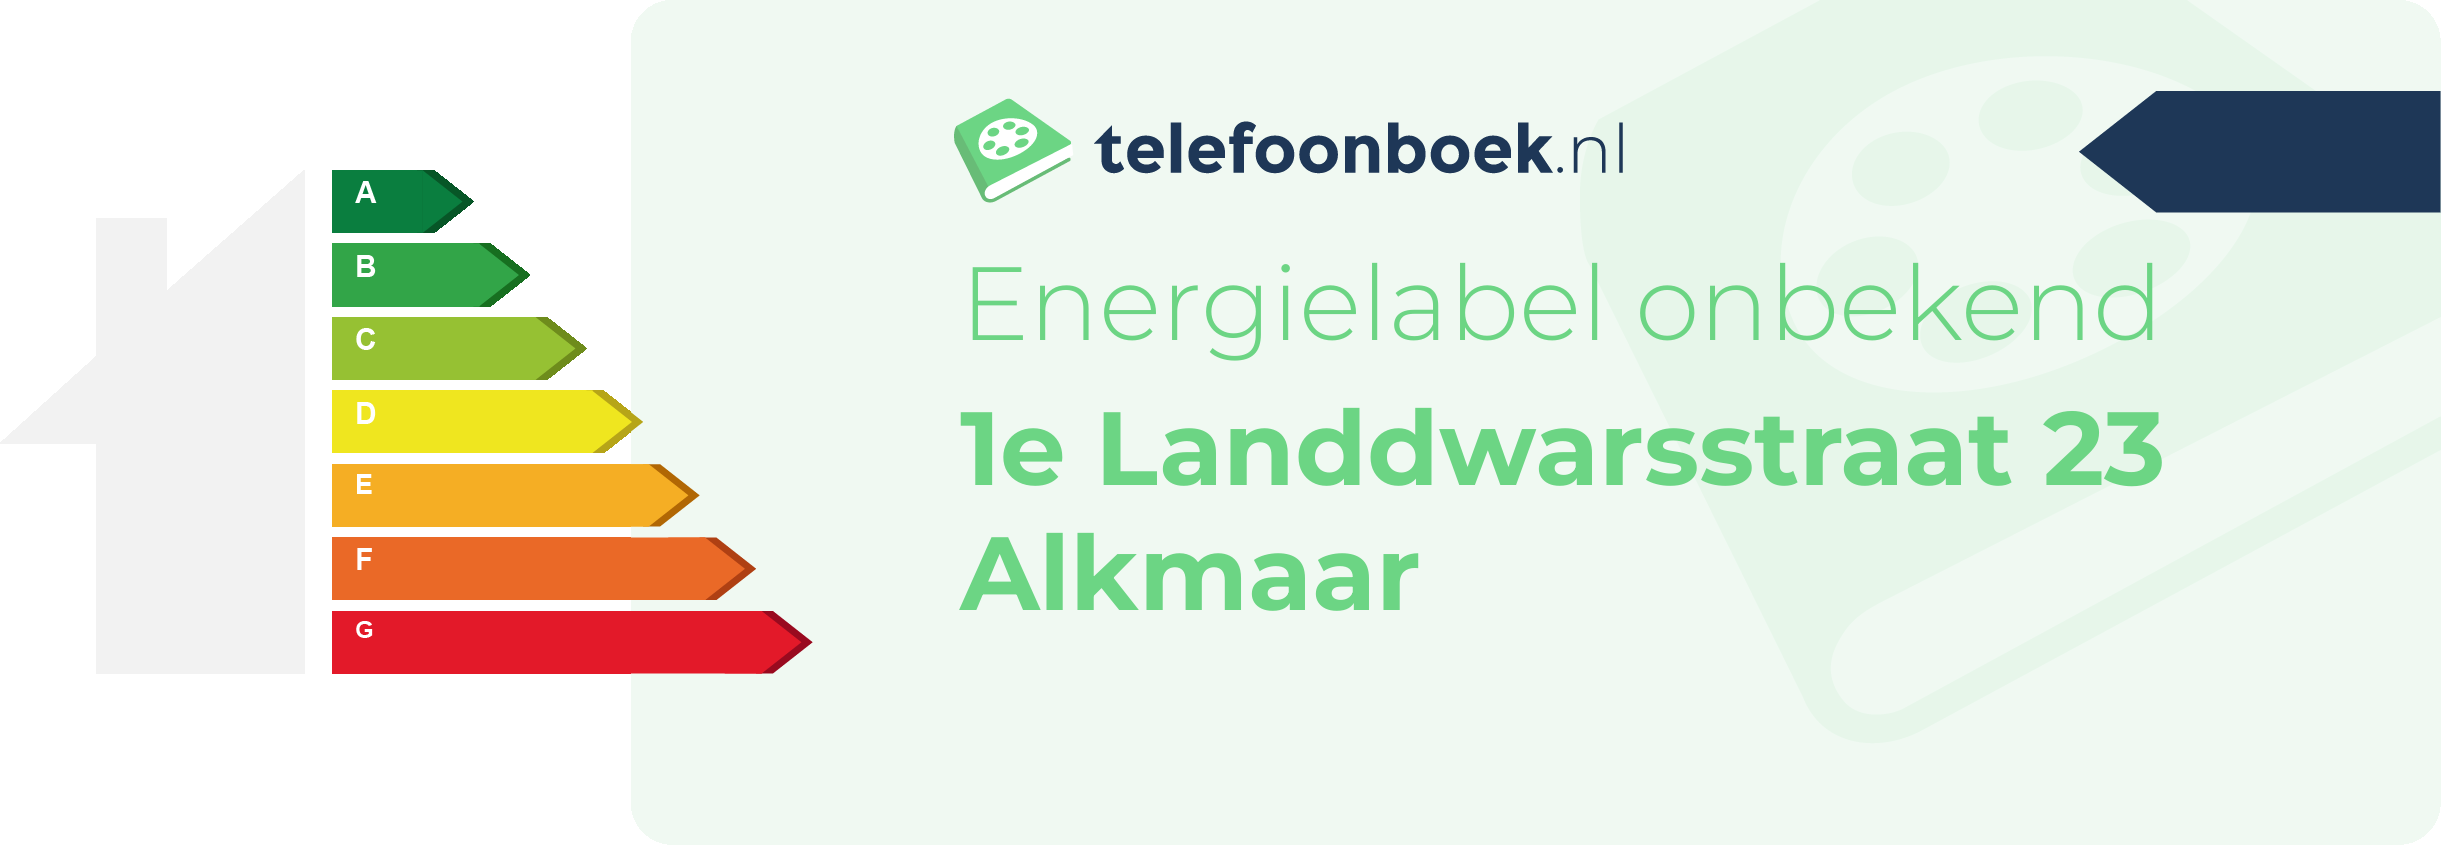 Energielabel 1e Landdwarsstraat 23 Alkmaar